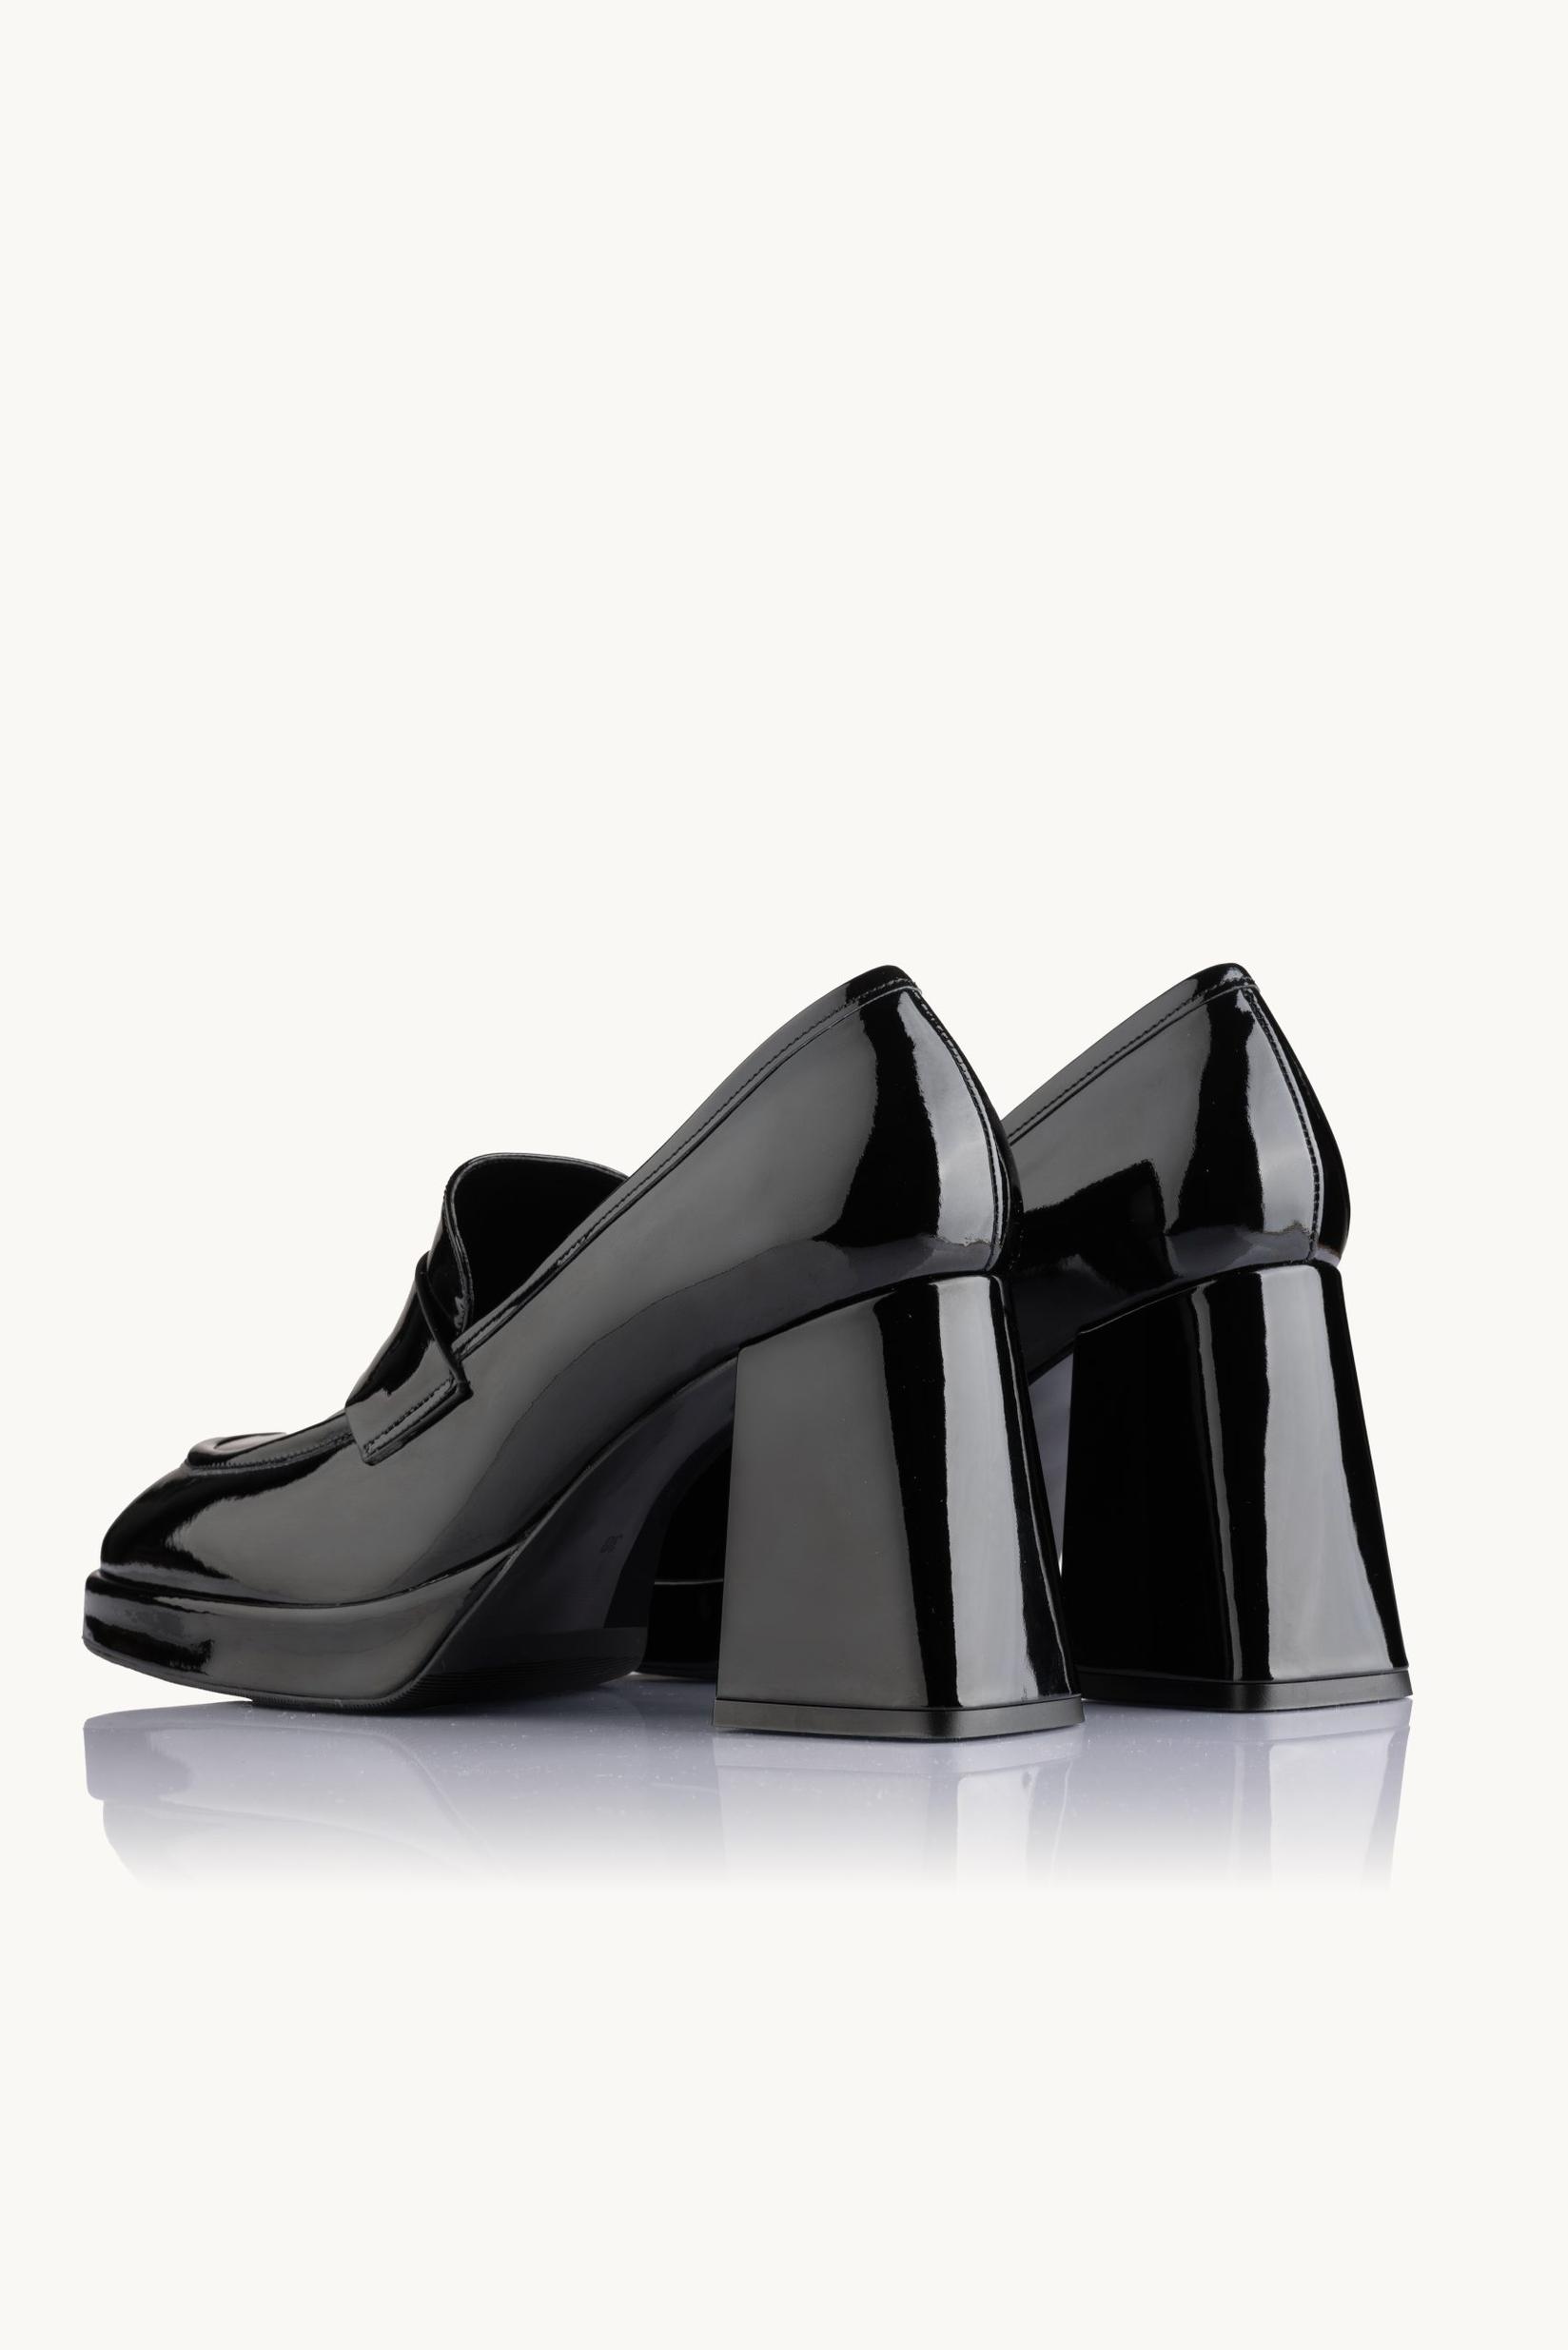 Selected image for NAKA Ženske cipele Starlit Sparkle crne